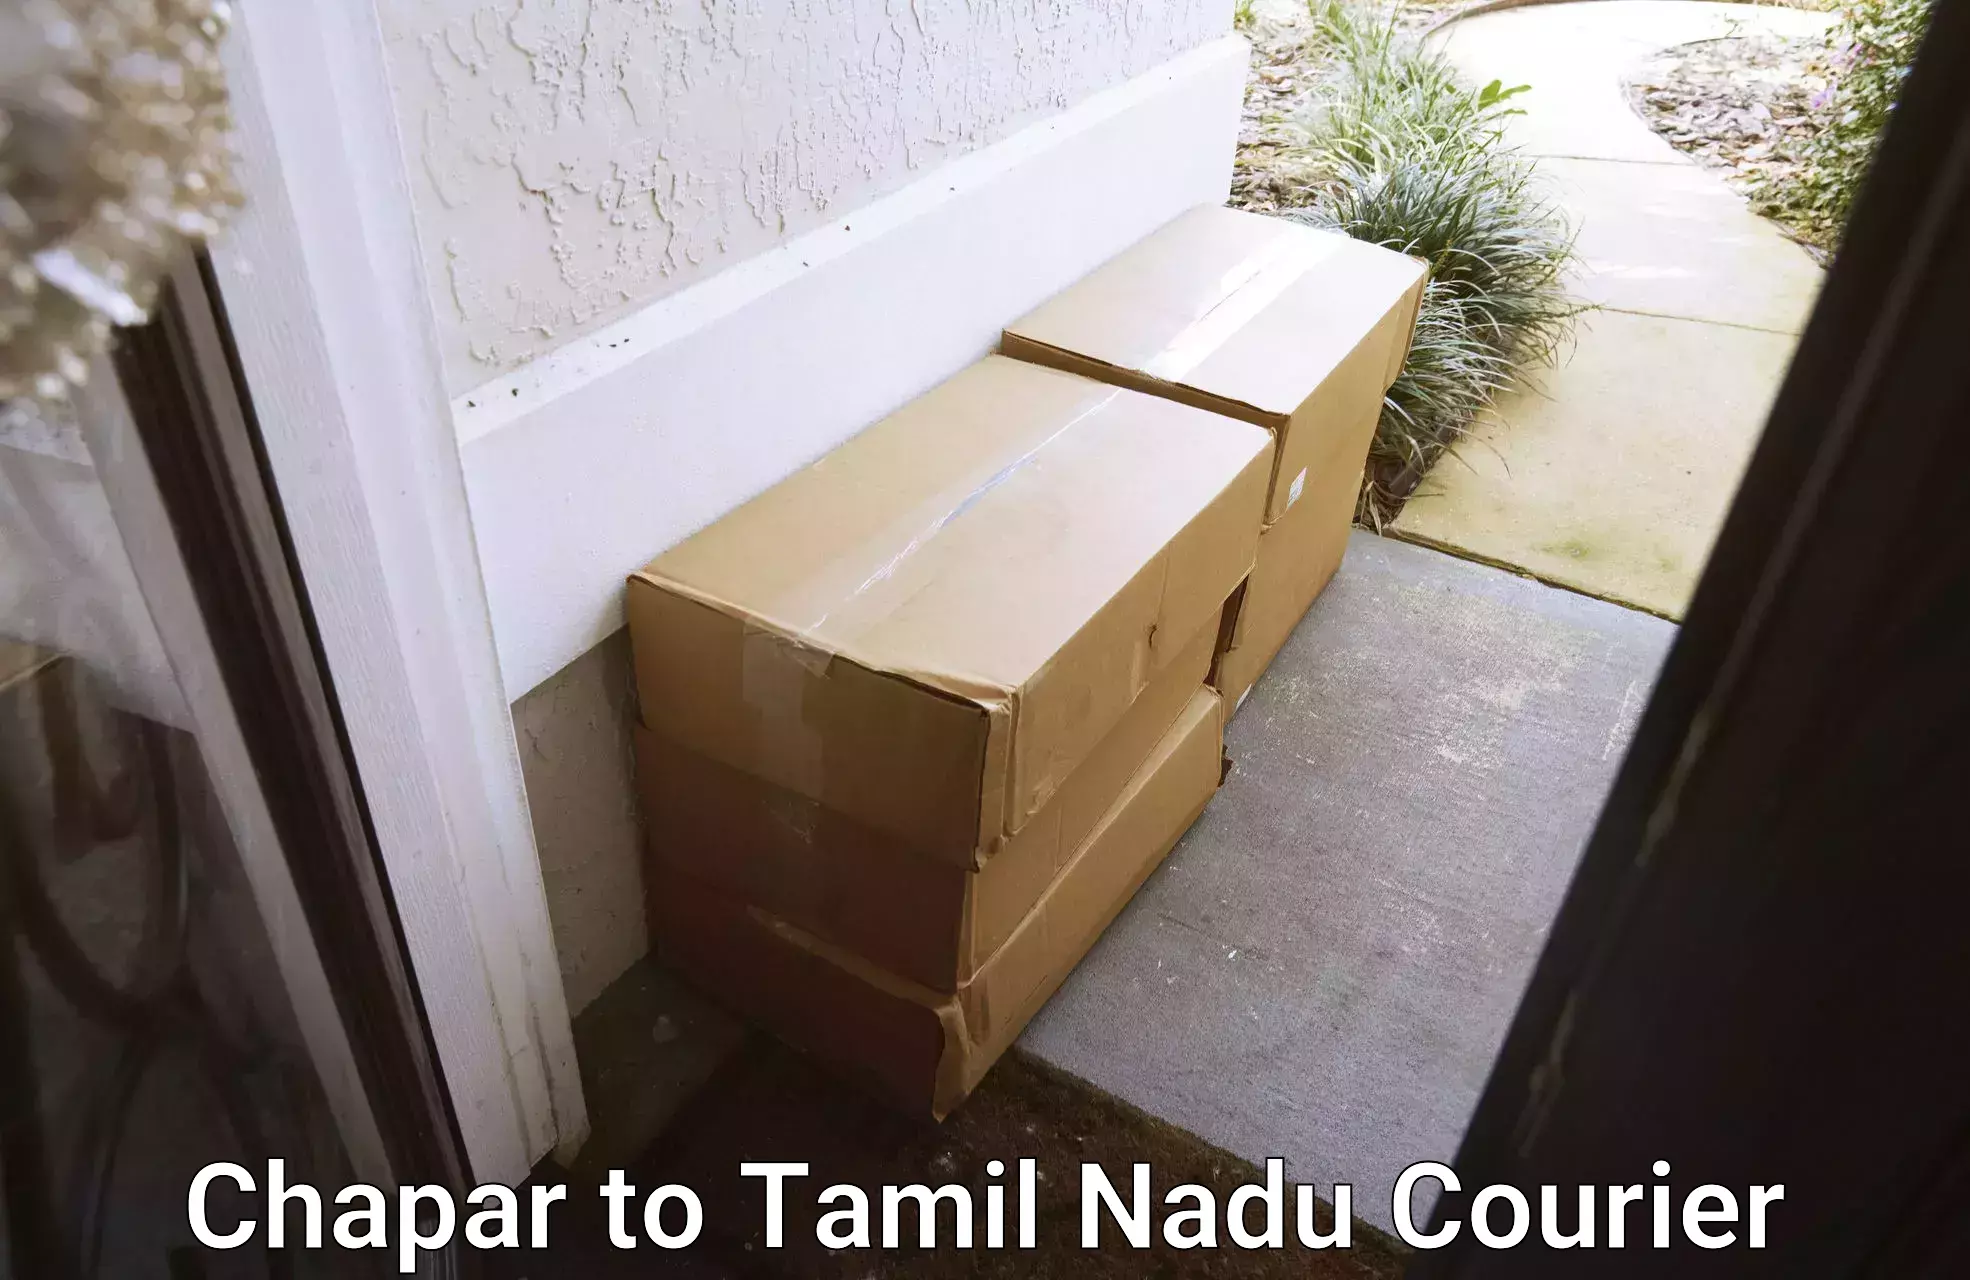 Premium courier services Chapar to Chennai Port